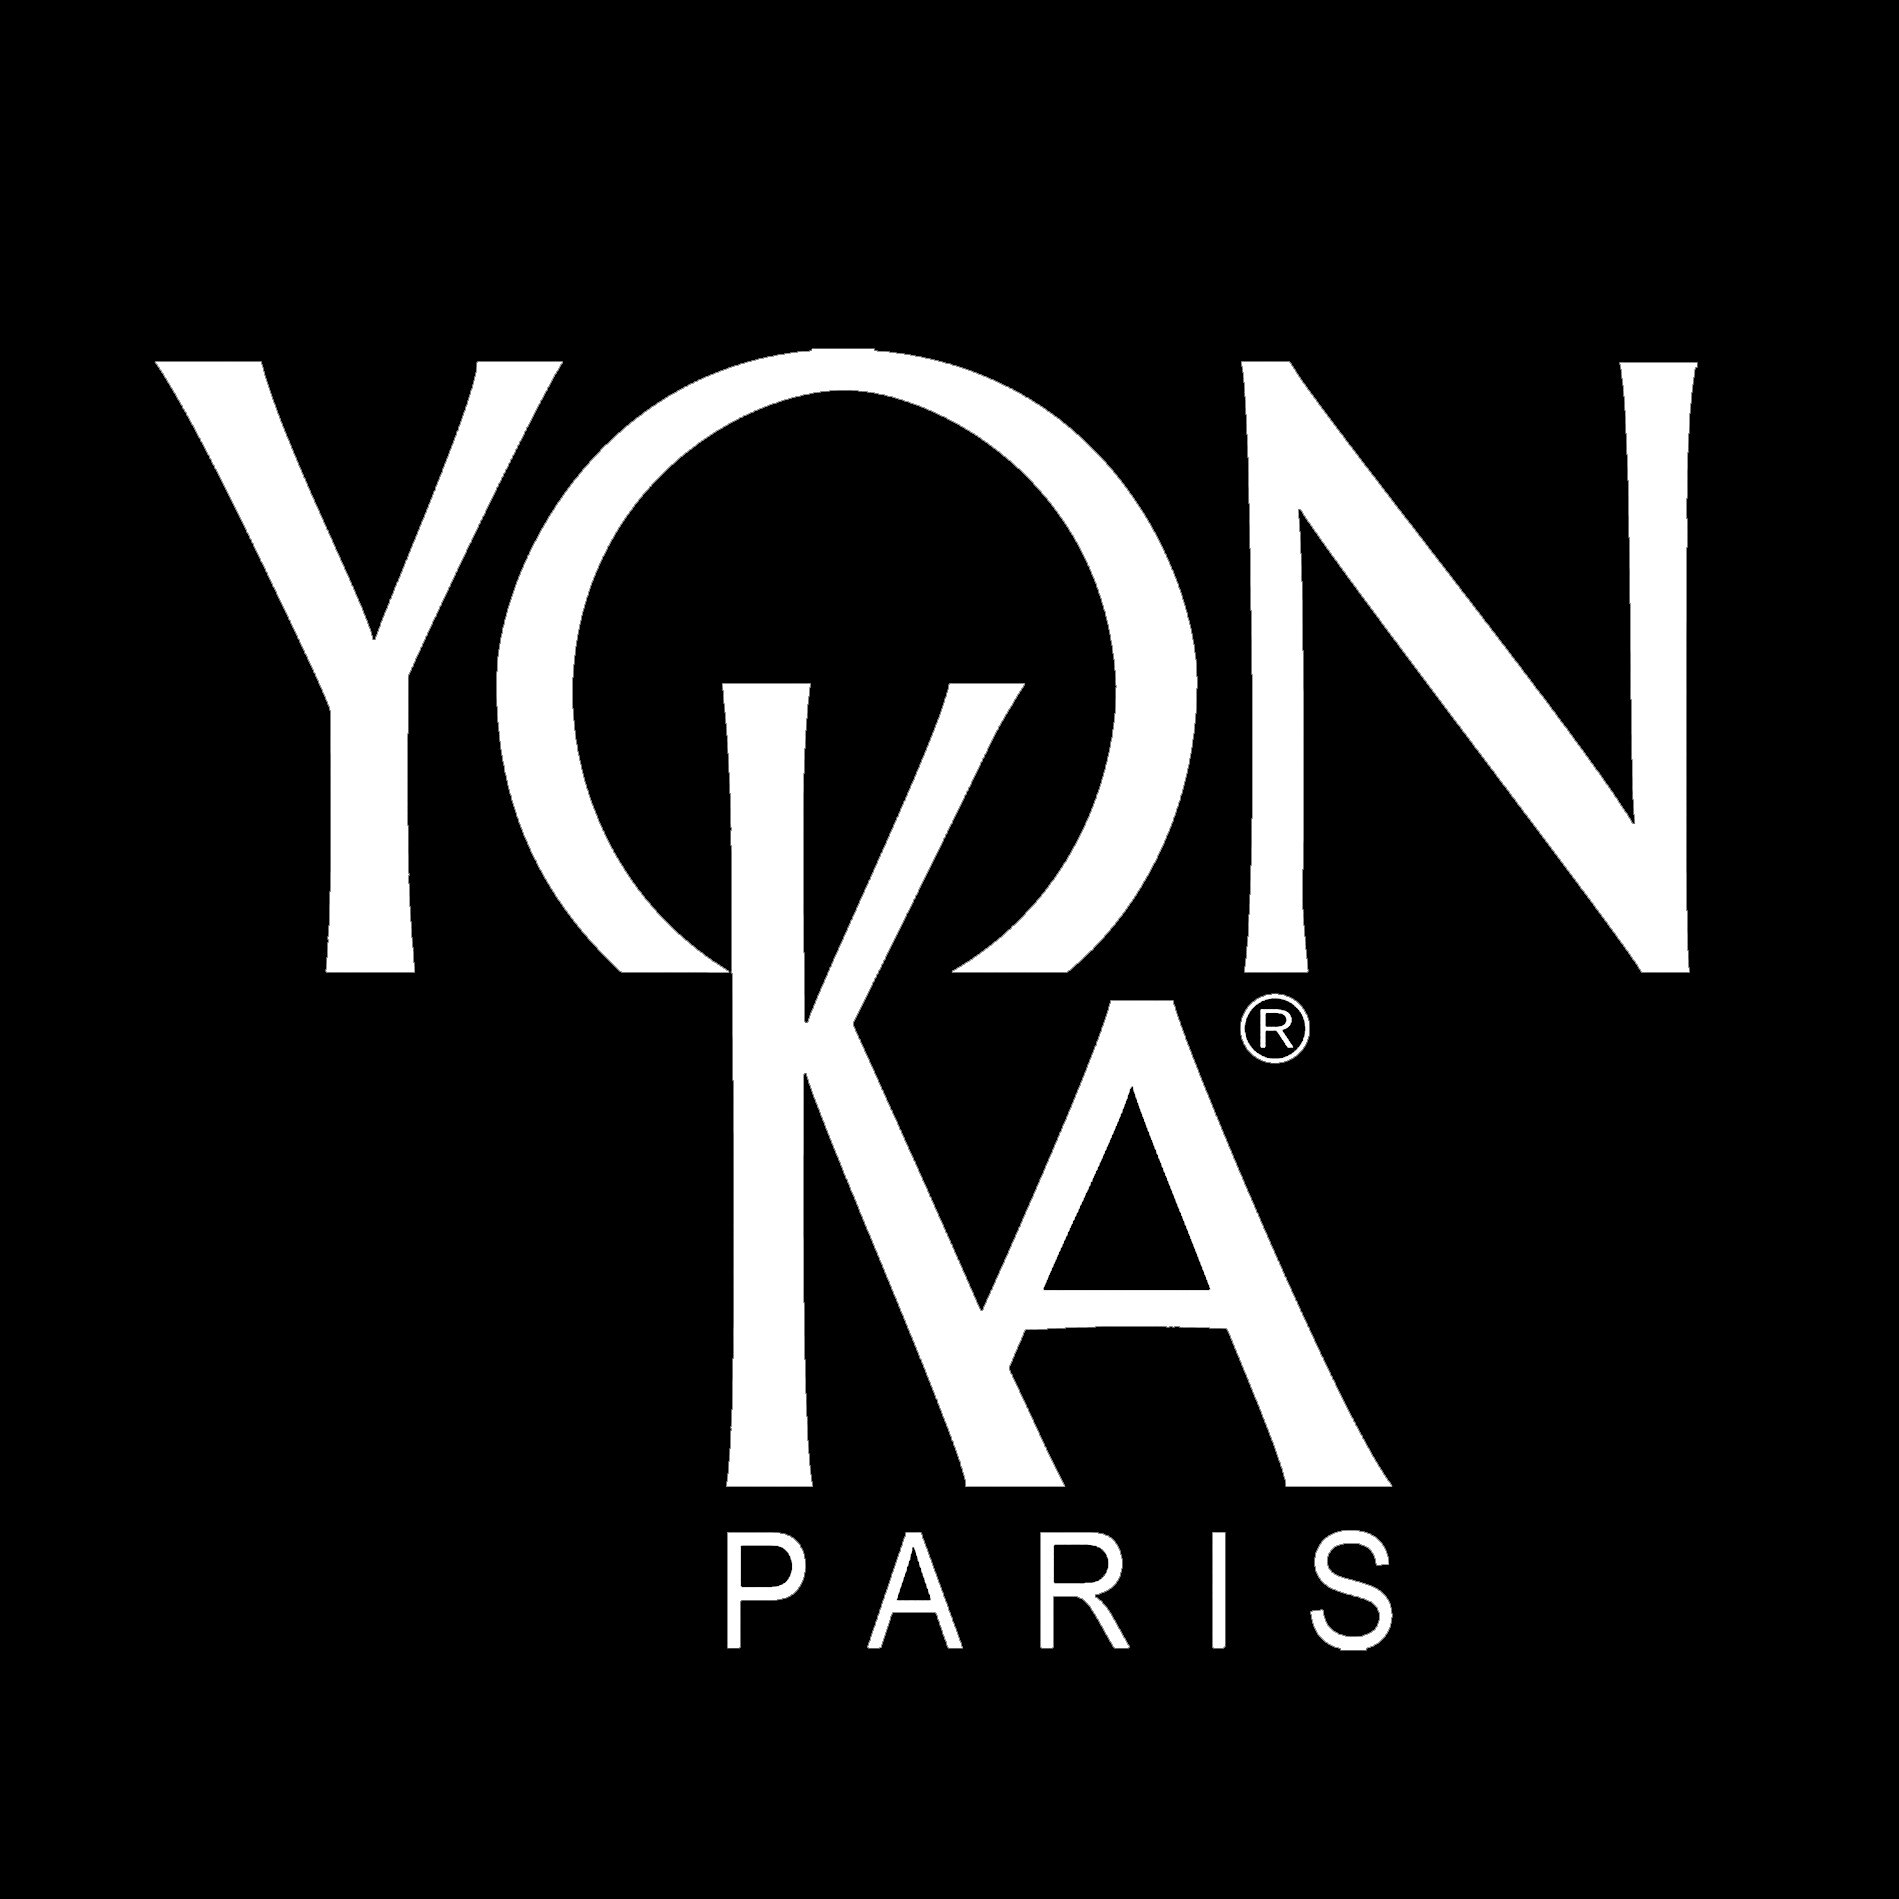 Make luxuries. Yonka косметика логотип. Ka логотип. Логотип фирмы yonka Paris. Yon-ka.